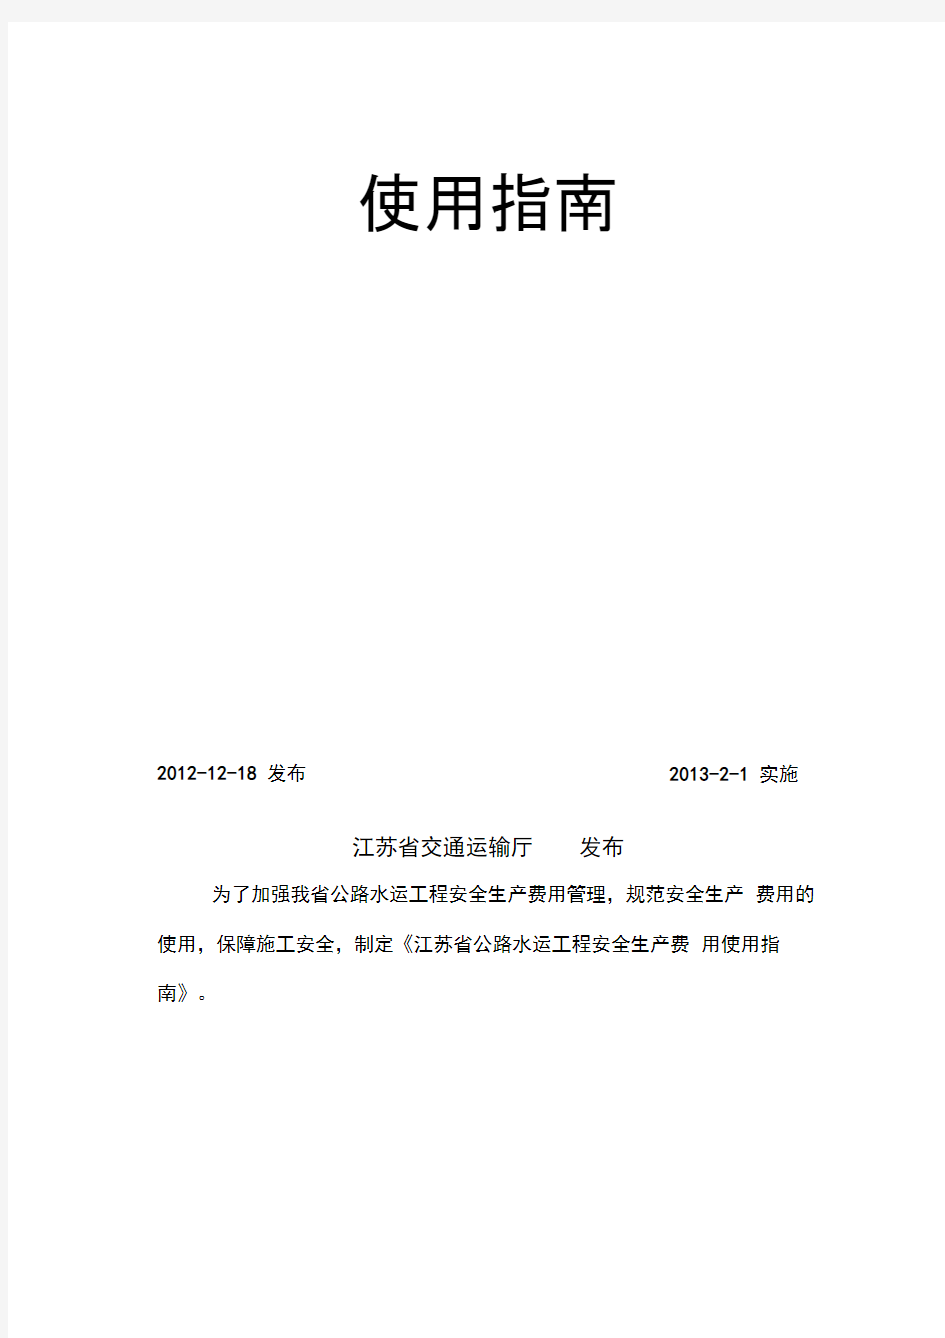 苏交规〔2012〕9号-附件2：《江苏省公路水运工程安全生产费用使用指南》